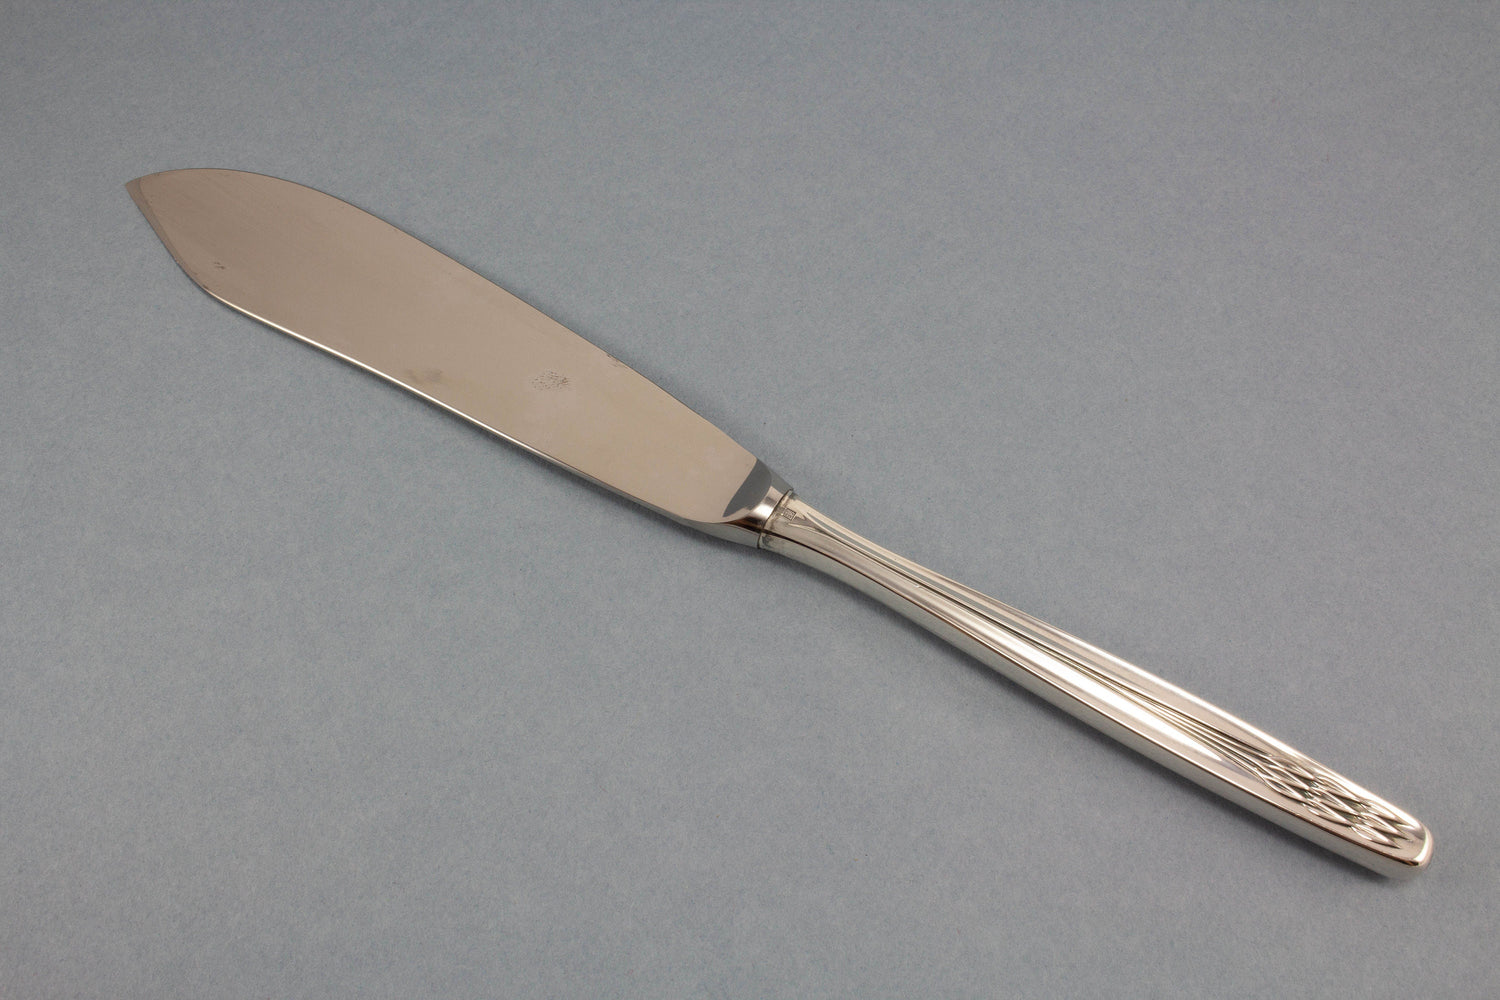 Schönes, versilbertes Tortenmesser von WMF, großes Messer für Hochzeitstorten